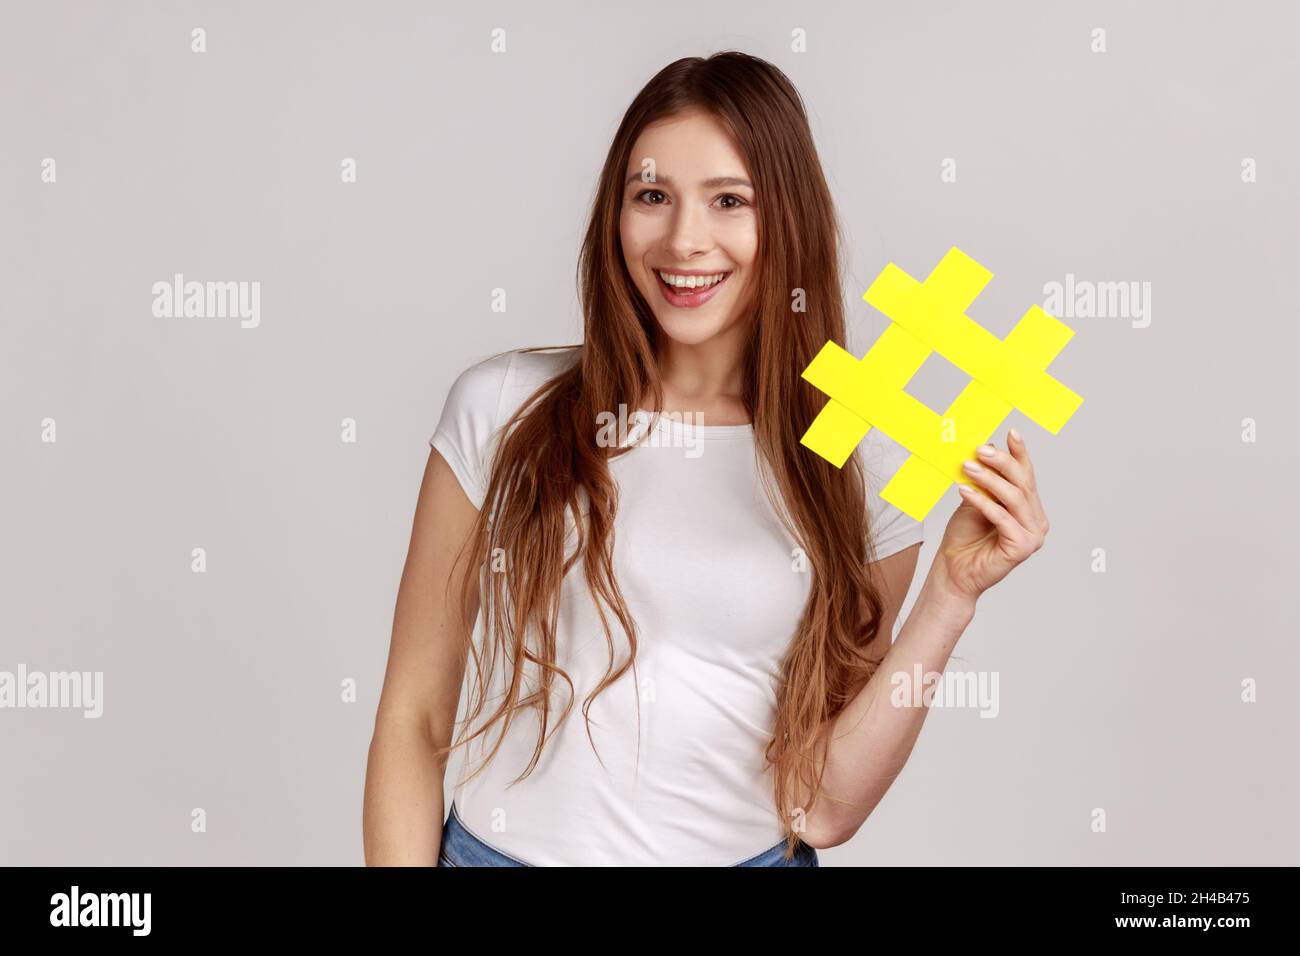 Sonriente hermosa mujer sosteniendo el símbolo amarillo hashtag, haciendo popular tema importante, estableciendo tendencias en Internet, usando camiseta blanca. Estudio en interior grabado aislado sobre fondo gris. Foto de stock